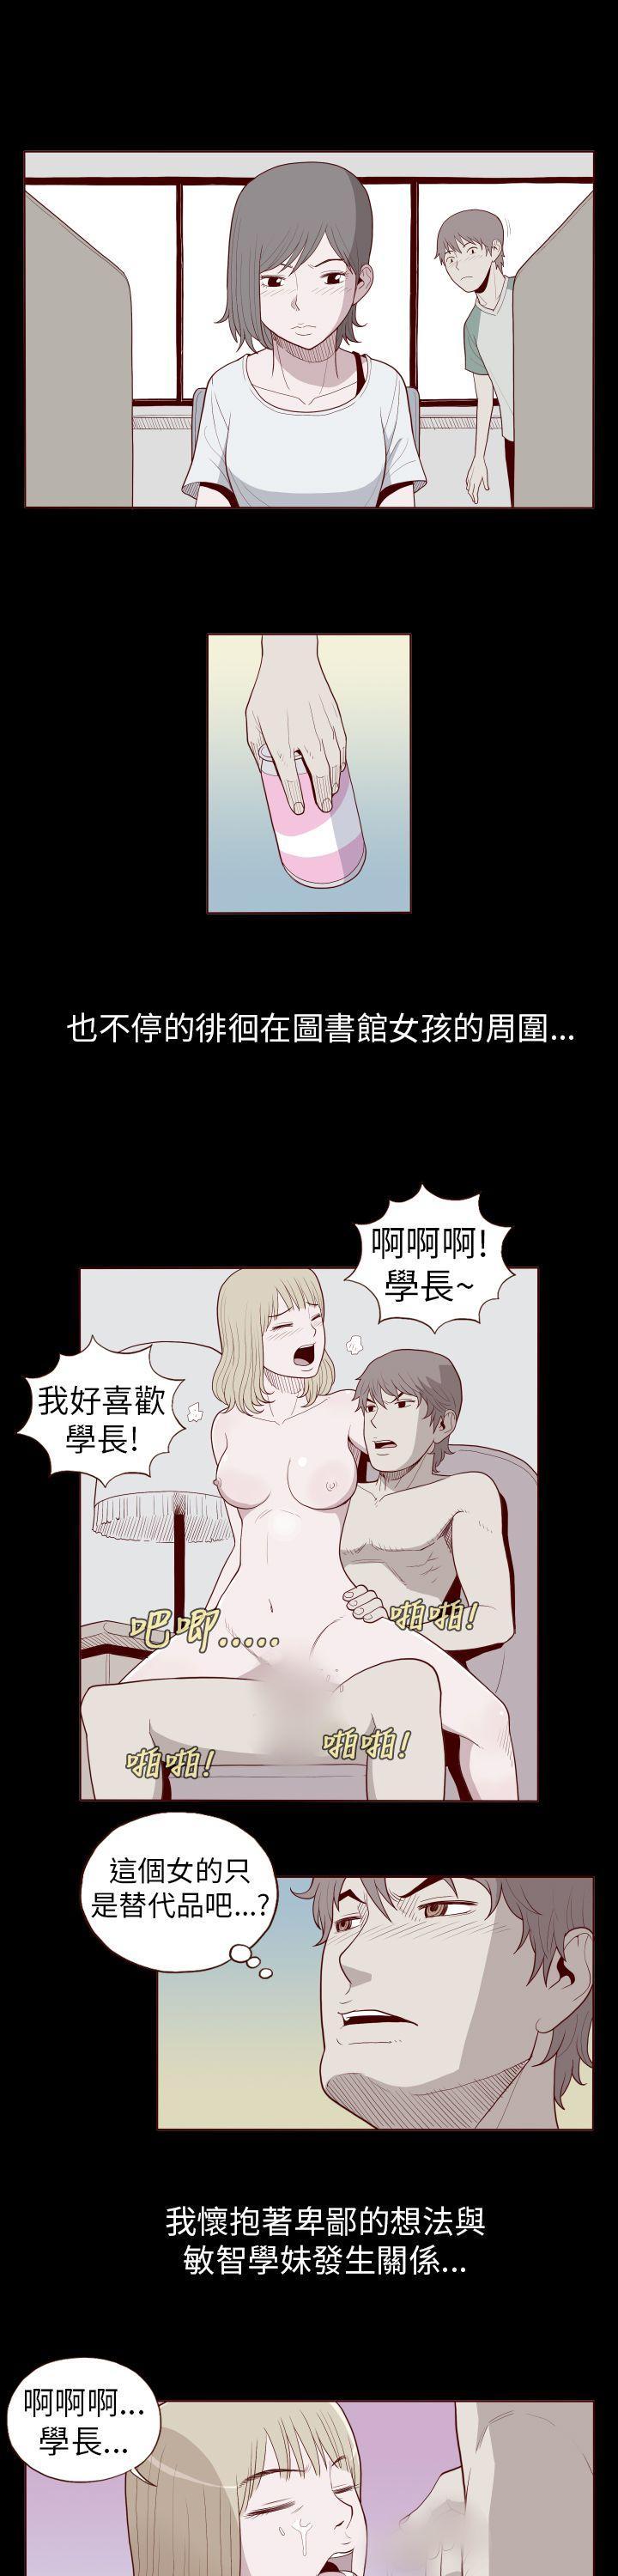 Petite Porn 淫亂魔鬼 Putas - Page 5